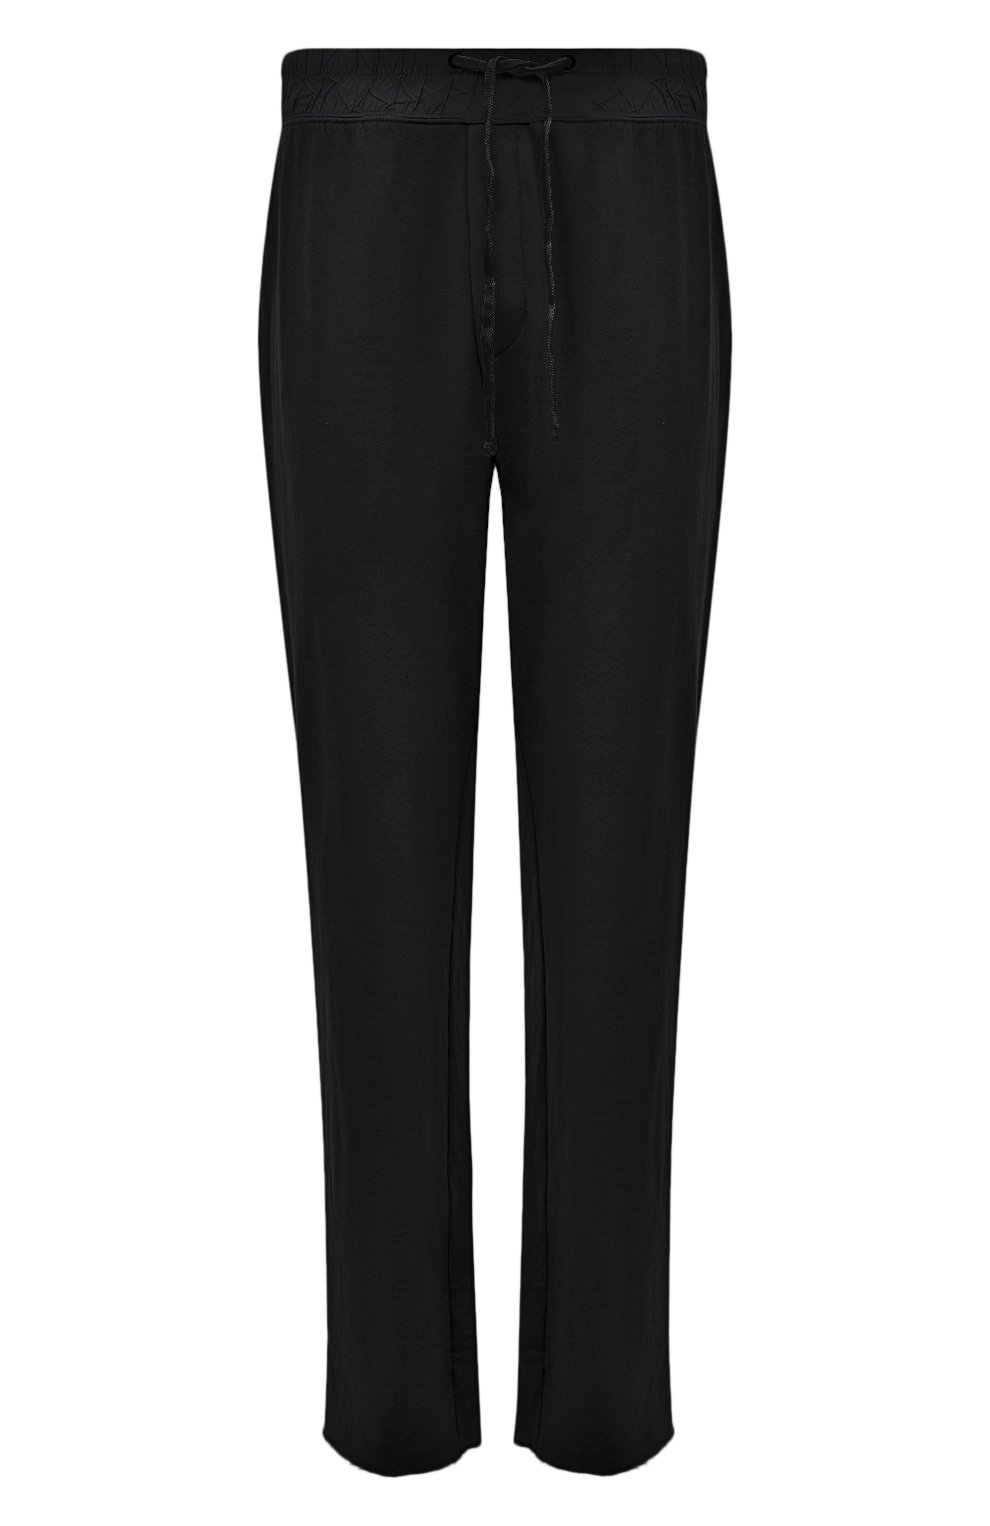 Хлопковые брюки James Perse MXA1352/BLK, цвет чёрный, размер 52